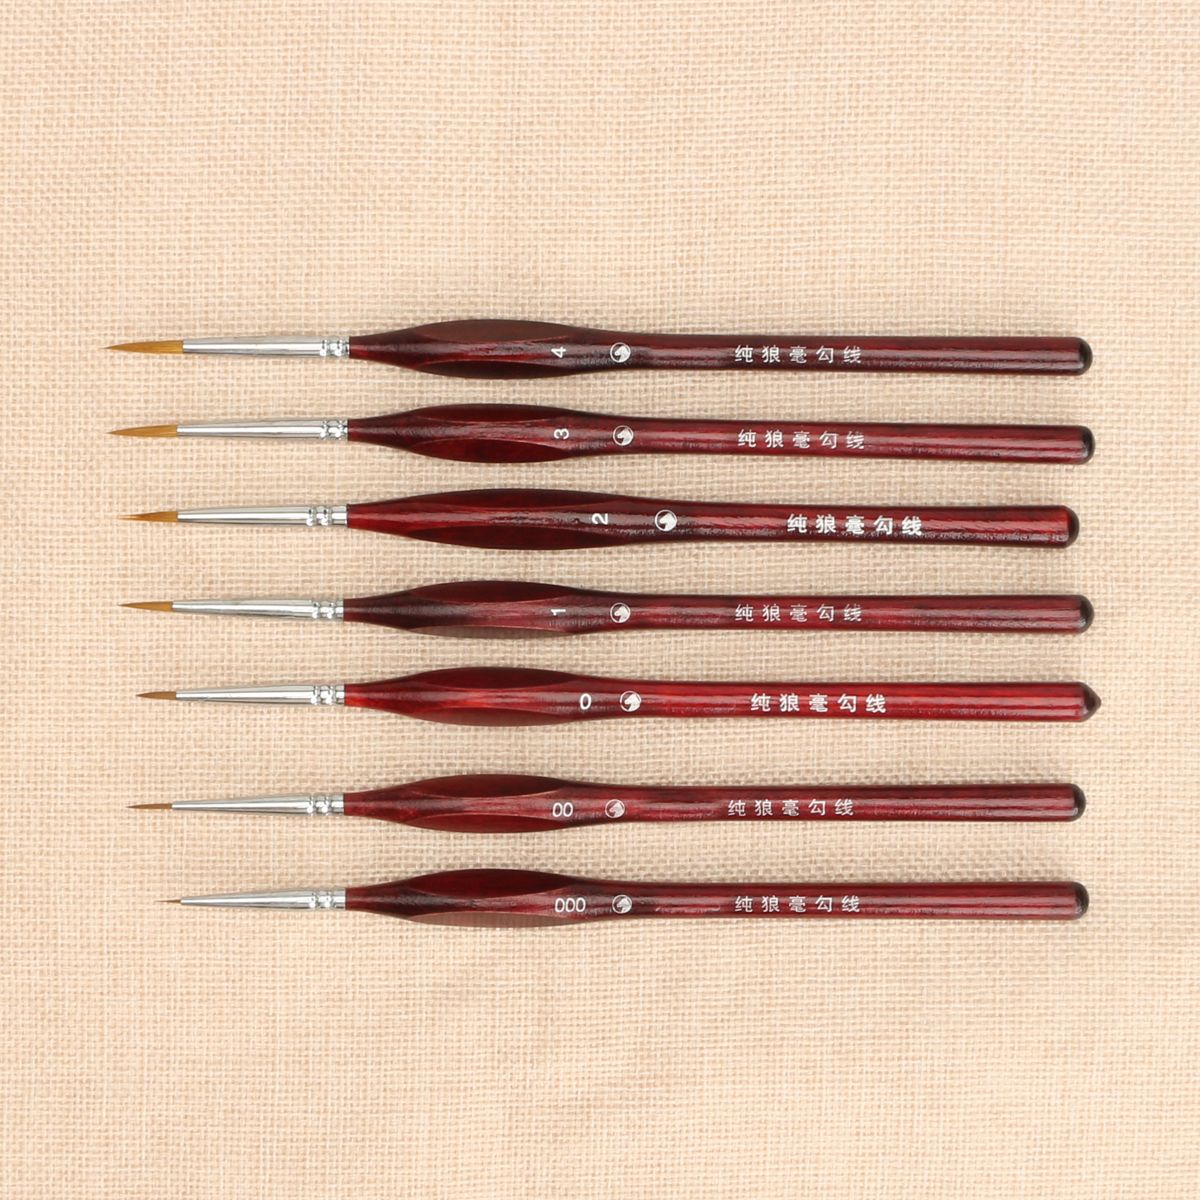 Micro-Detail-Paint-Brush-Set-Tiny-Professional-Detail-Painting-Brush-Kit-Miniature-Art-Brushes-1356250